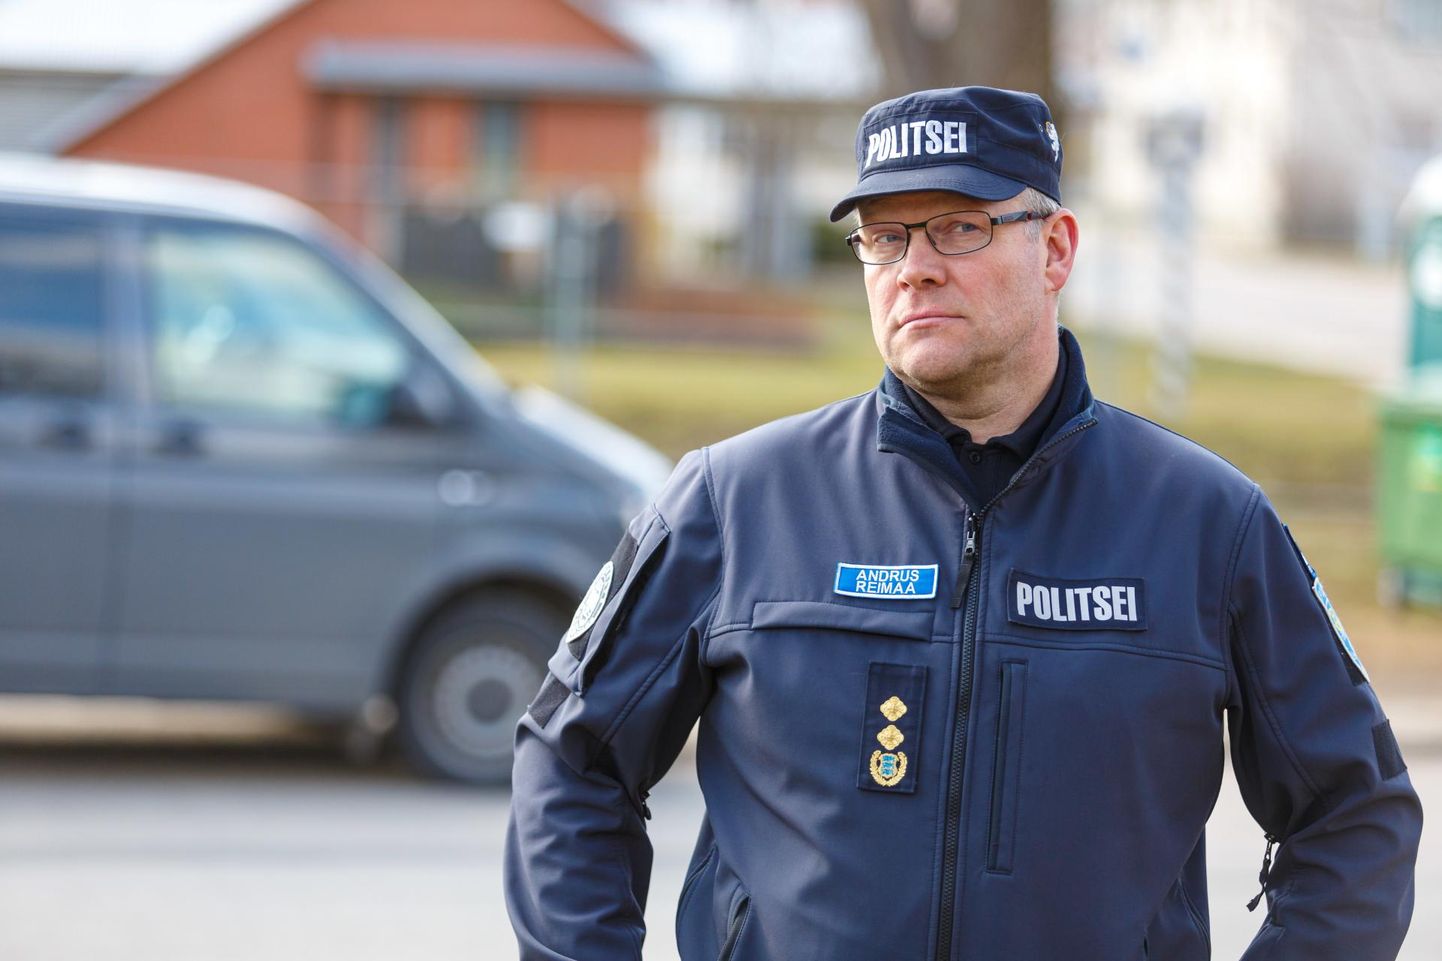 Politsei- ja piirivalveameti Kagu piiripunkti juhi Andrus Reimaa sõnul on Eesti lõunapiiril kahe nädalaga saavutatud uus rutiin.